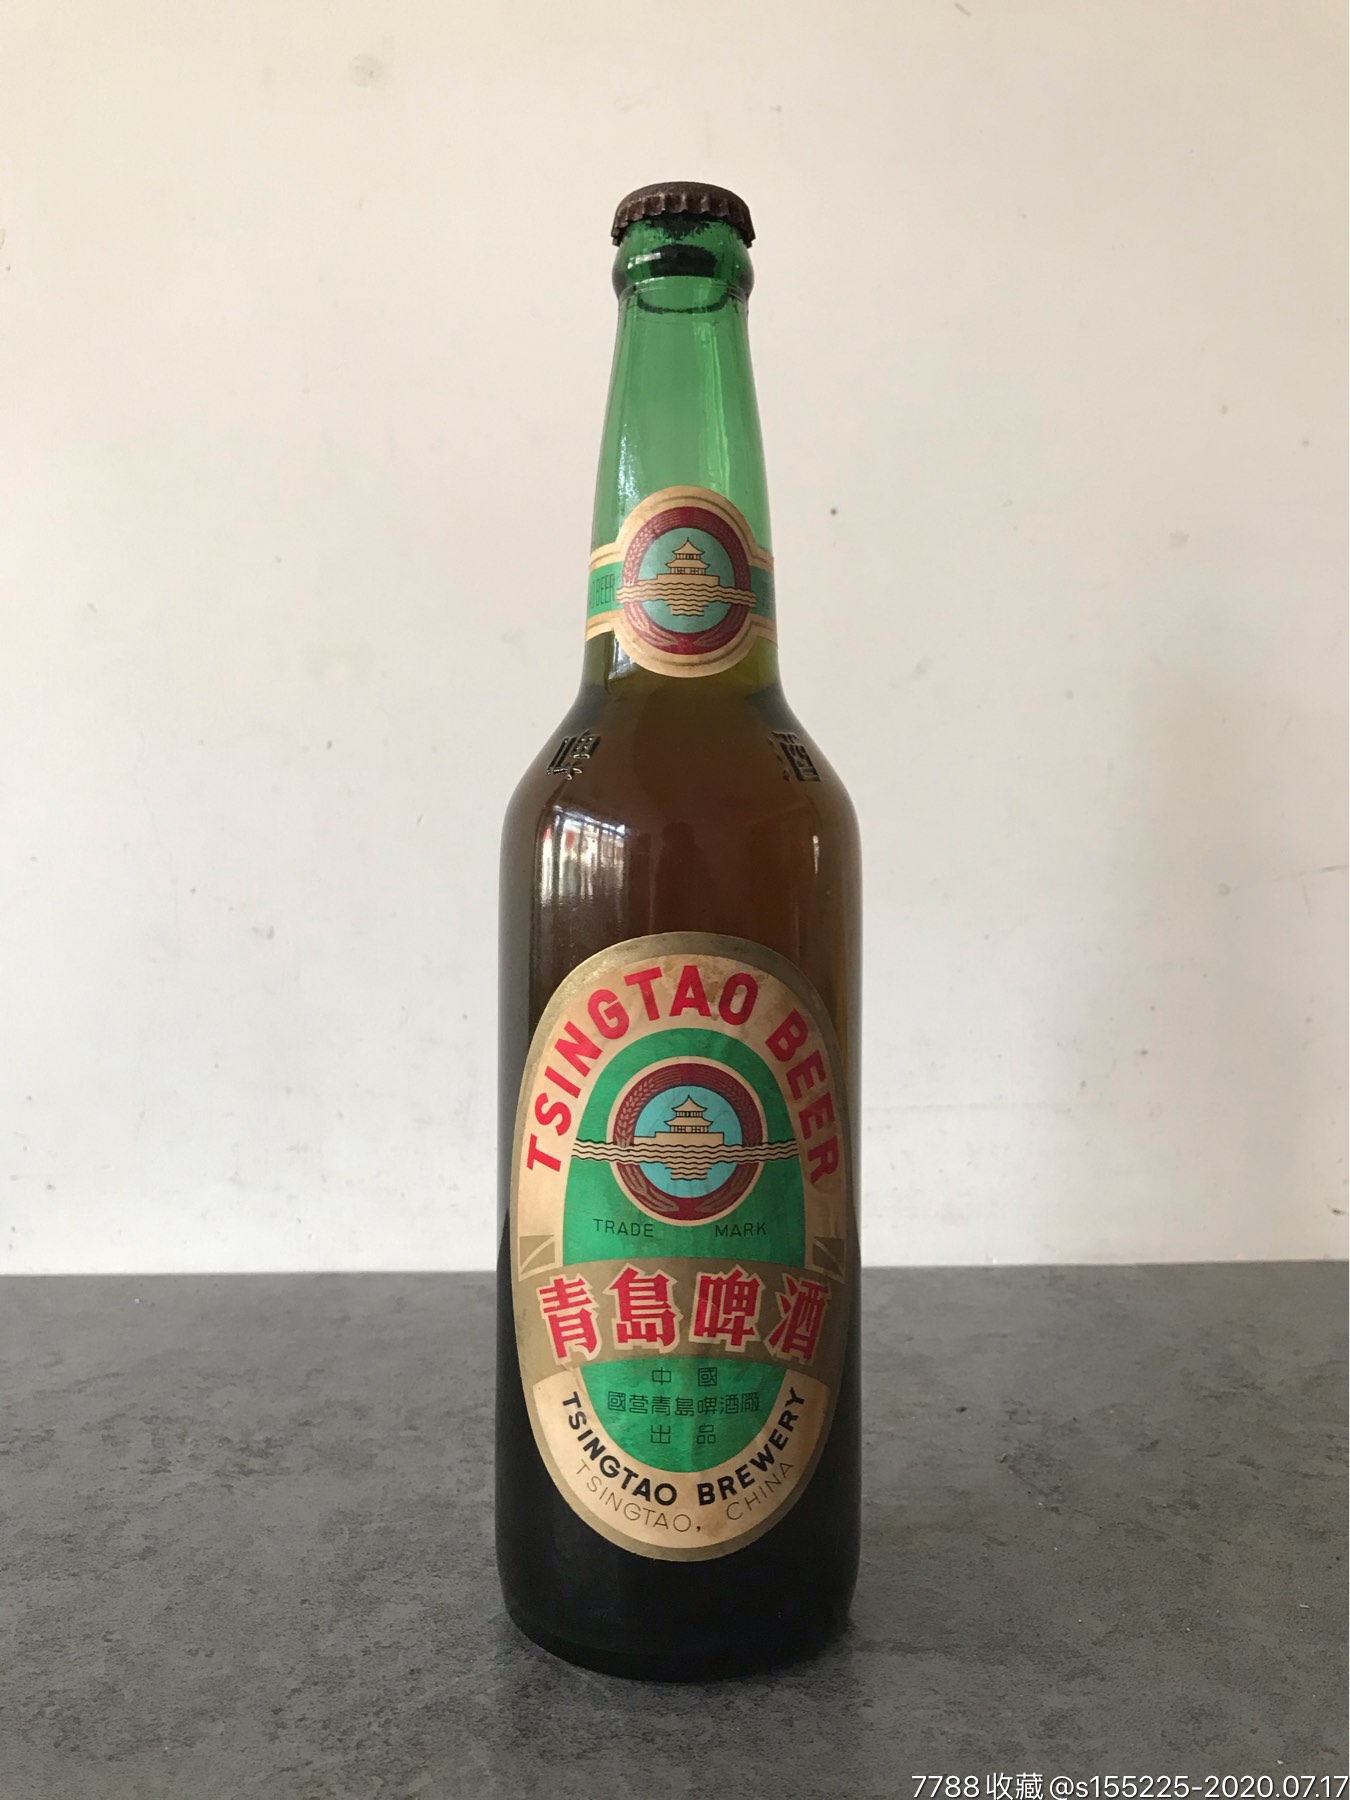 70,80年代青岛啤酒(未开封,葵花瓶底,少见)